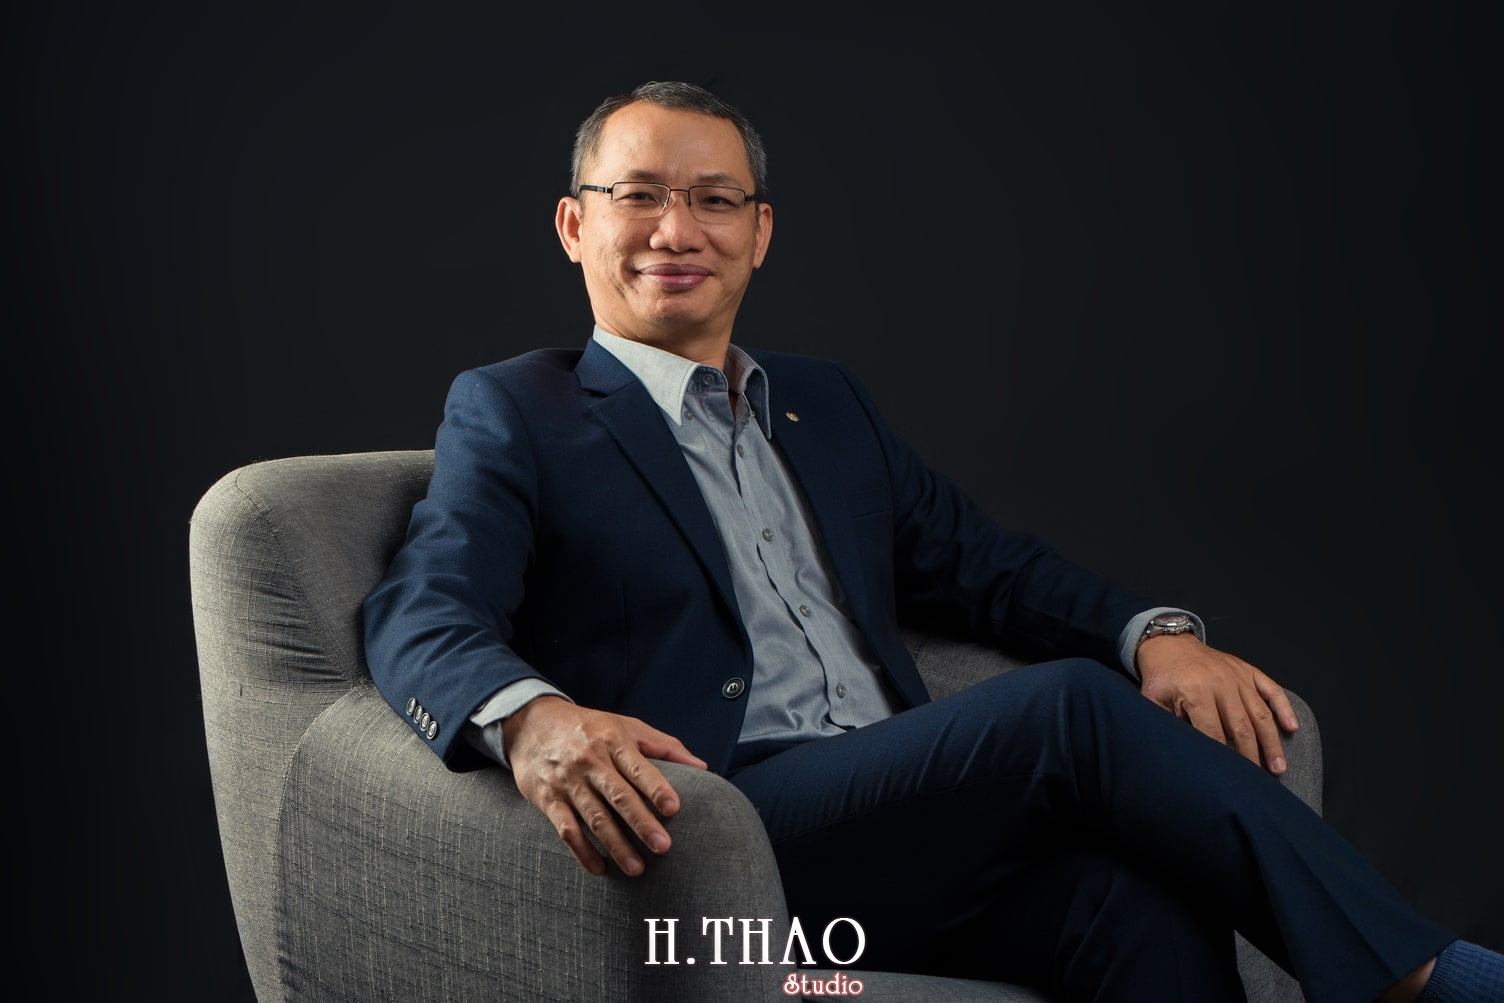 Anh giang vien dai hoc 8 - 35 cách tạo dáng chụp ảnh doanh nhân chuyên nghiệp - HThao Studio